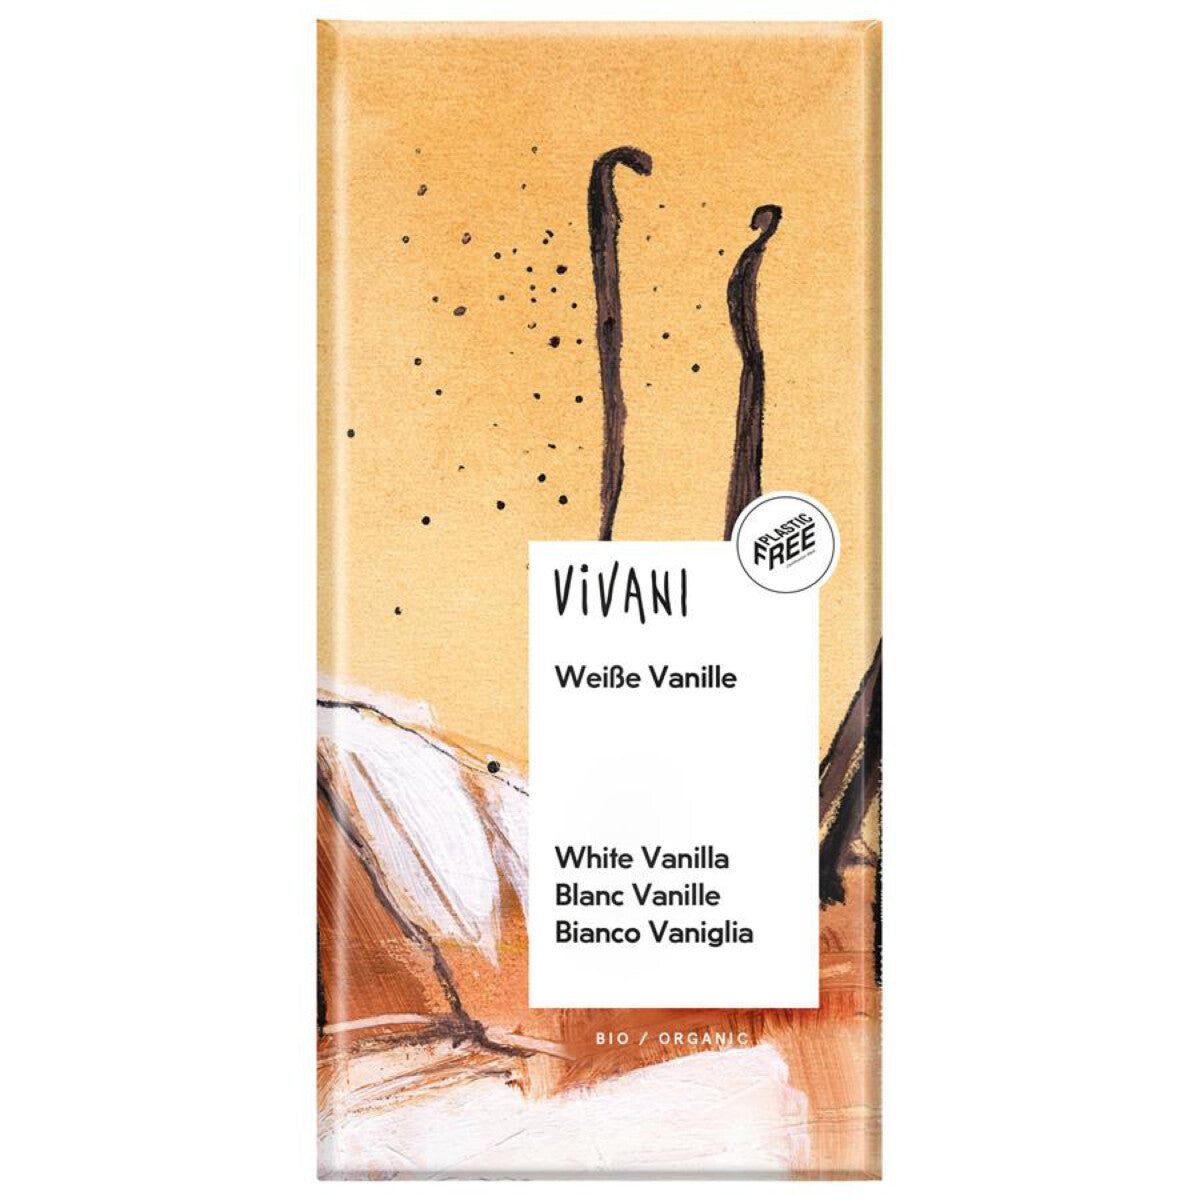 VIVANI Weiße Vanille - 80 g